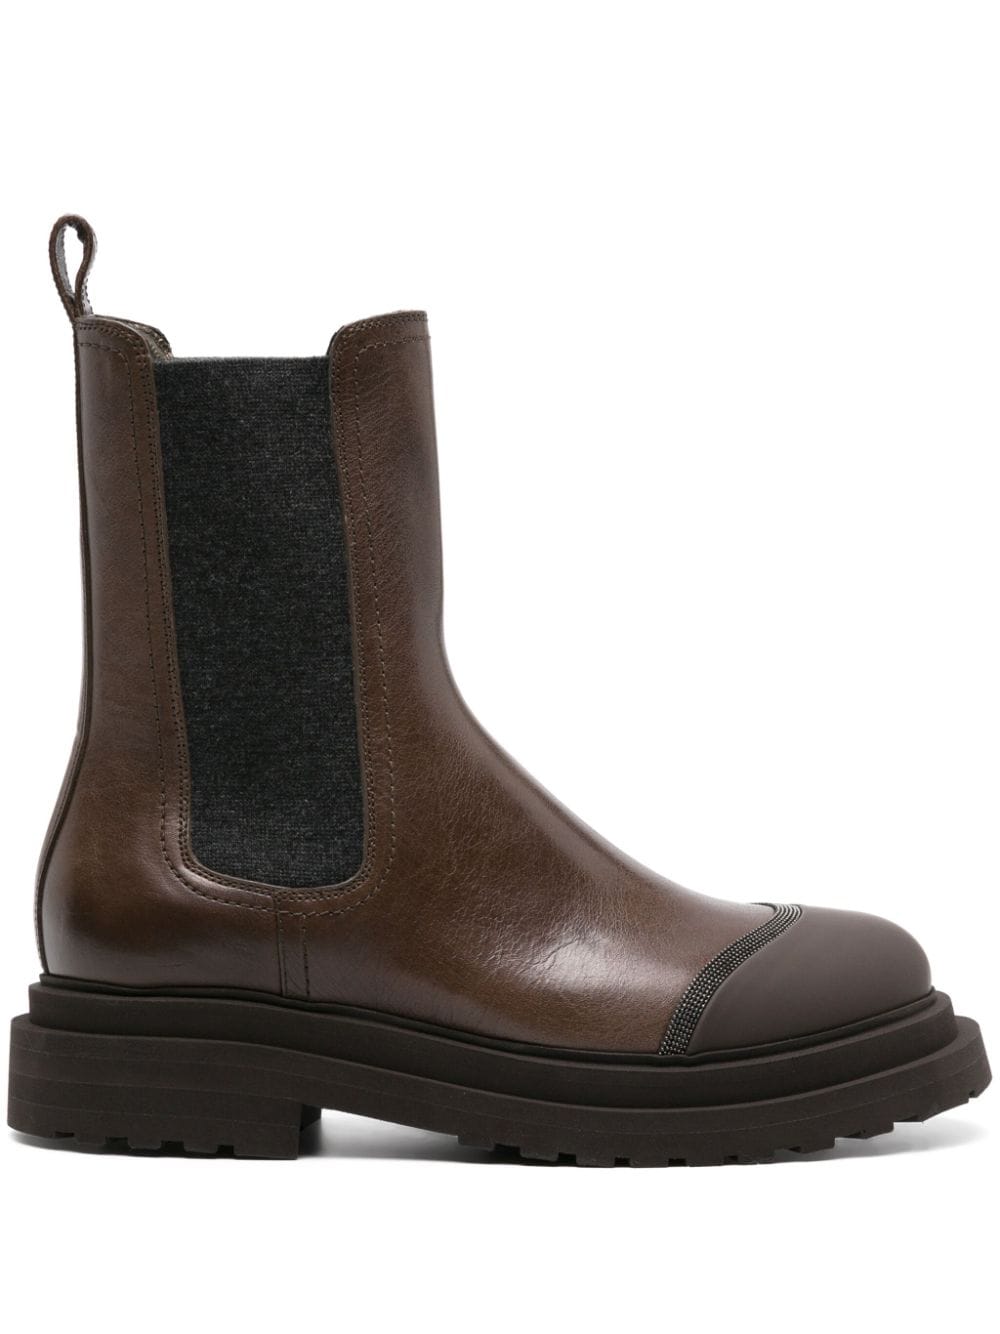 Brunello Cucinelli Monili Leather Chelsea Boots - Farfetch